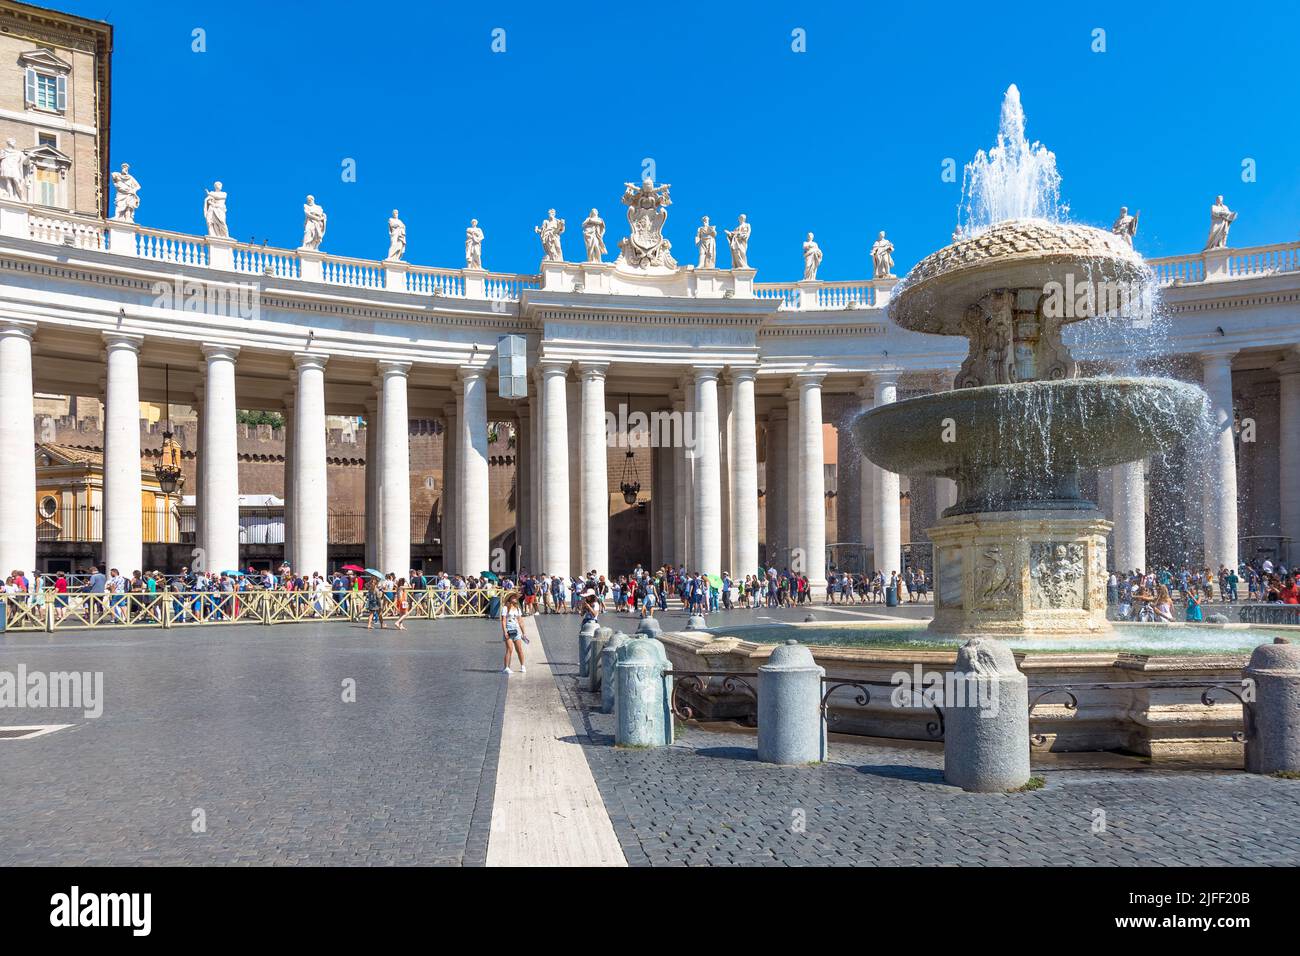 Roma, Stato vaticano - Agosto 24, 2018: una lunga fila di persone in attesa davanti la Basilica di San Pietro ingresso. Concetto per overtourism e turismo di massa Foto Stock